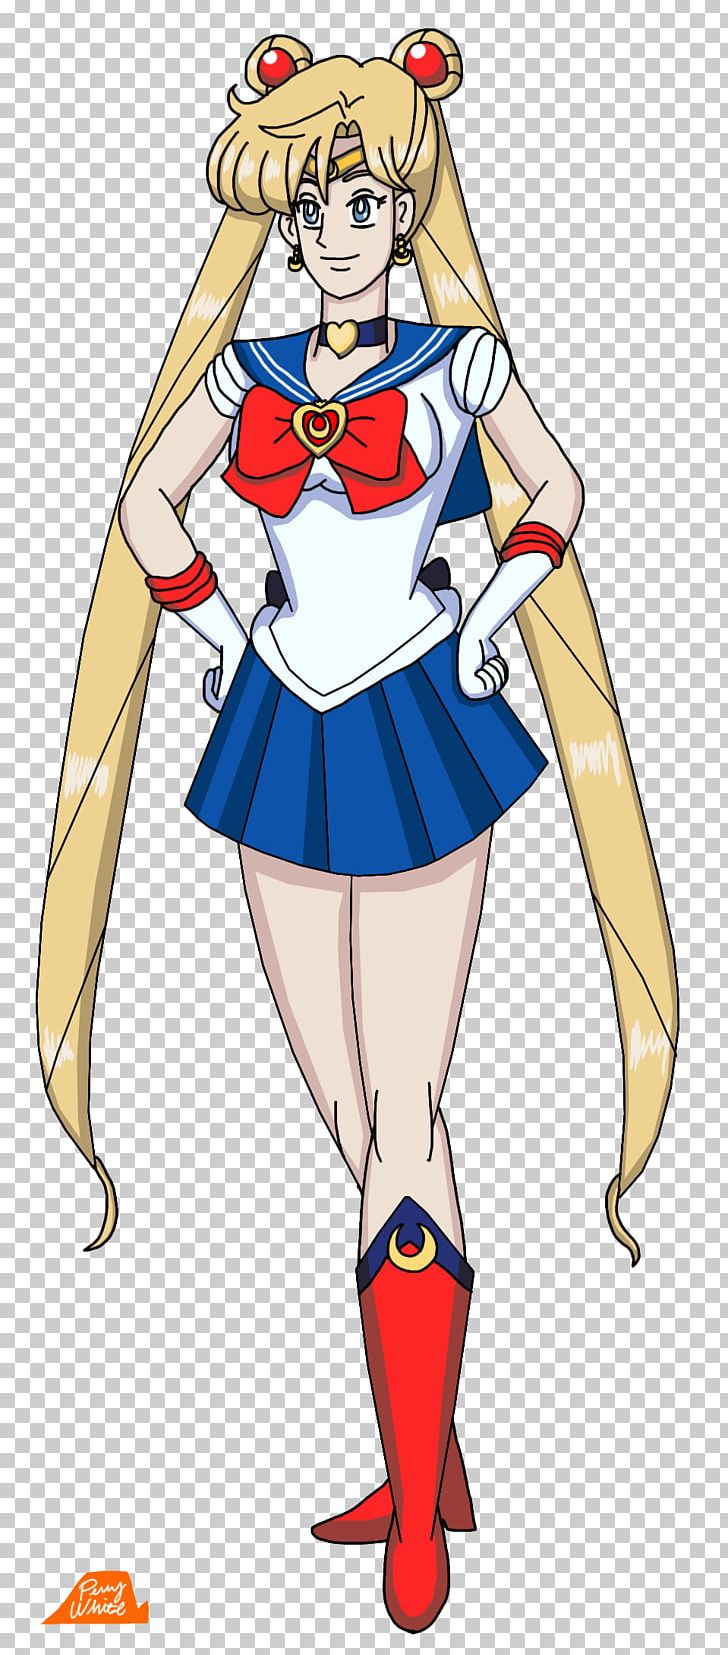 Sailor Moon Sailor Uranus Sailor Neptune Sailor Venus Sailor Senshi PNG, Clipart, Anime, Art, Cartoon, Character, Clothing Free PNG Download